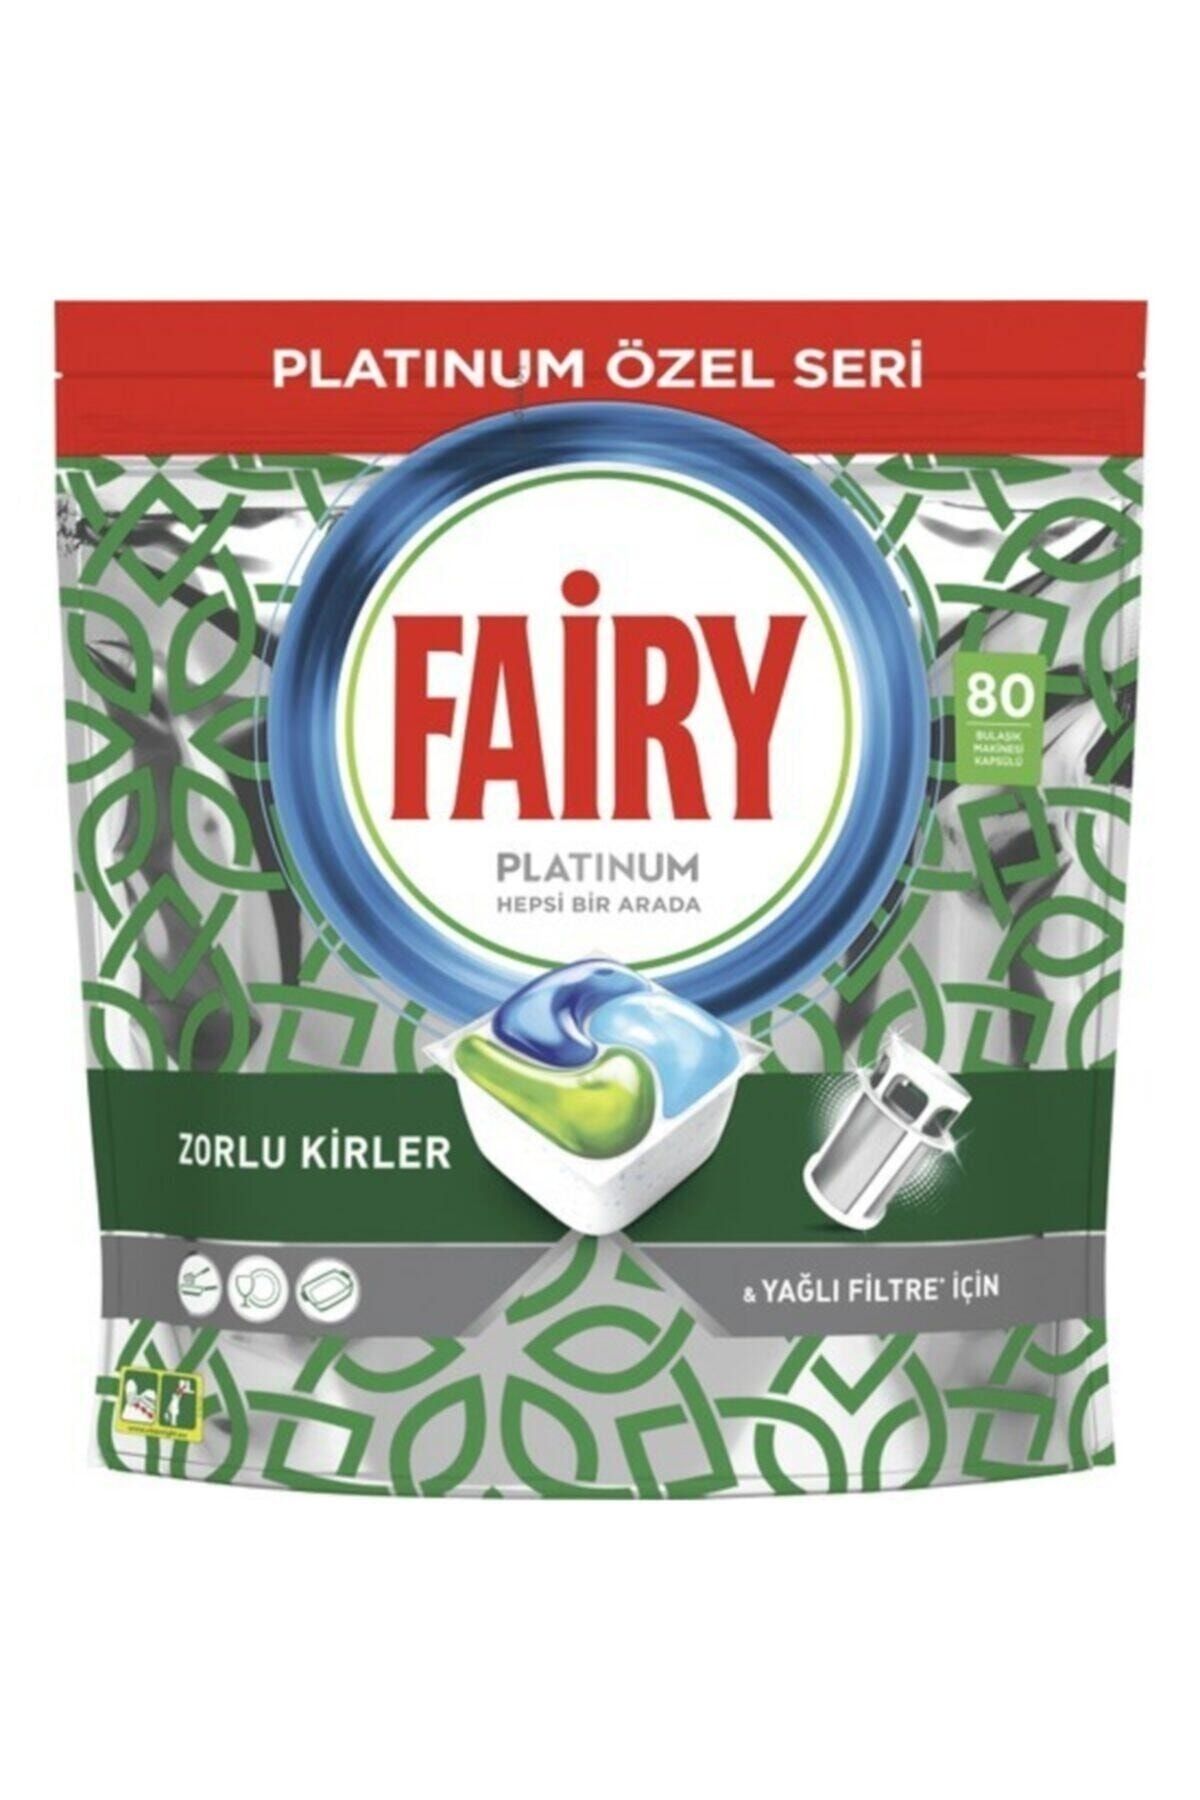 Fairy Platinum Özel Seri Bulaşık Makinesi Kapsülü 80 li